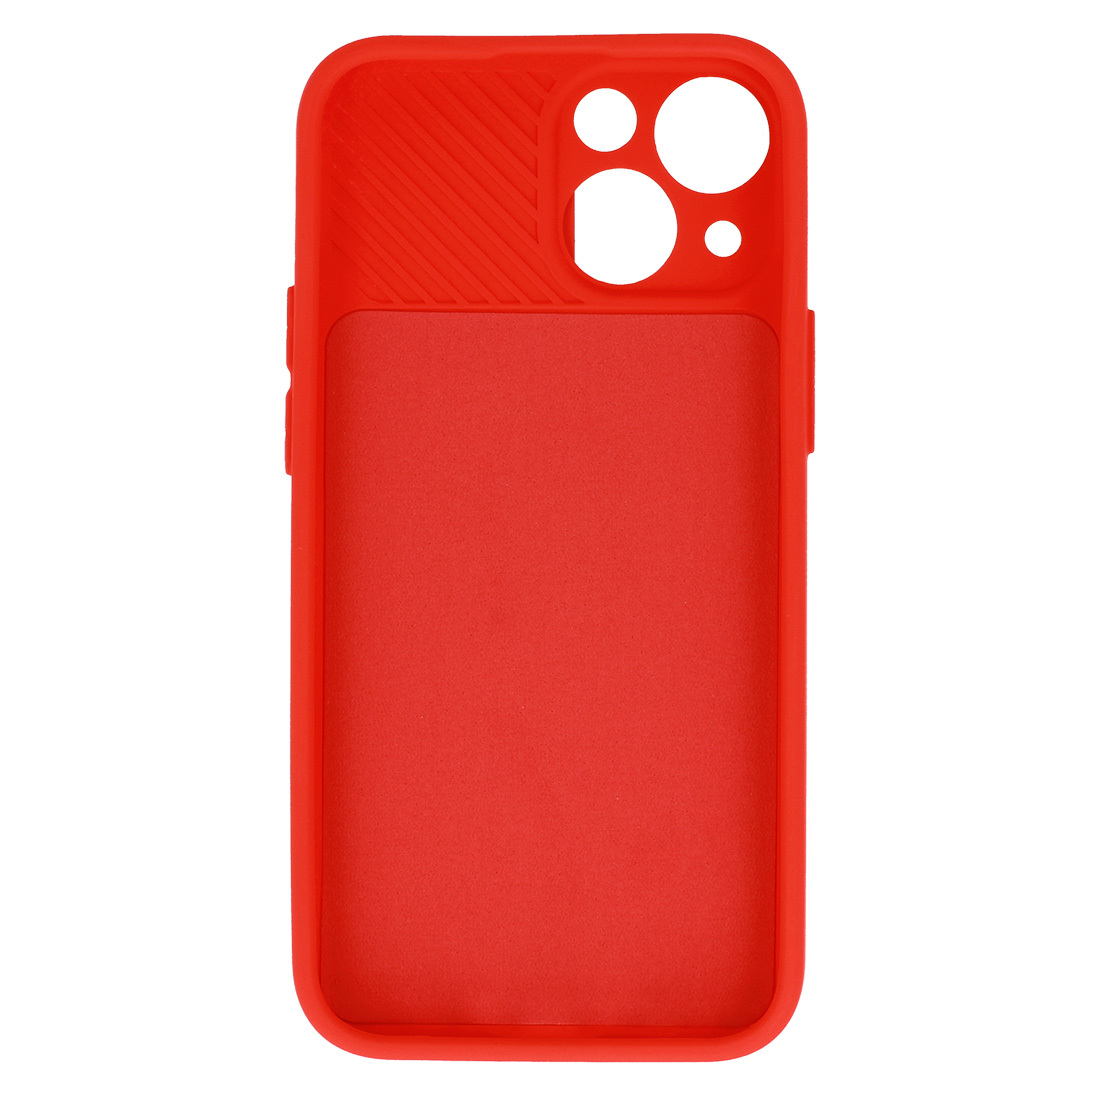 Pokrowiec etui z elastycznego TPU Camshield Soft Case czerwone APPLE iPhone 11 Pro / 5